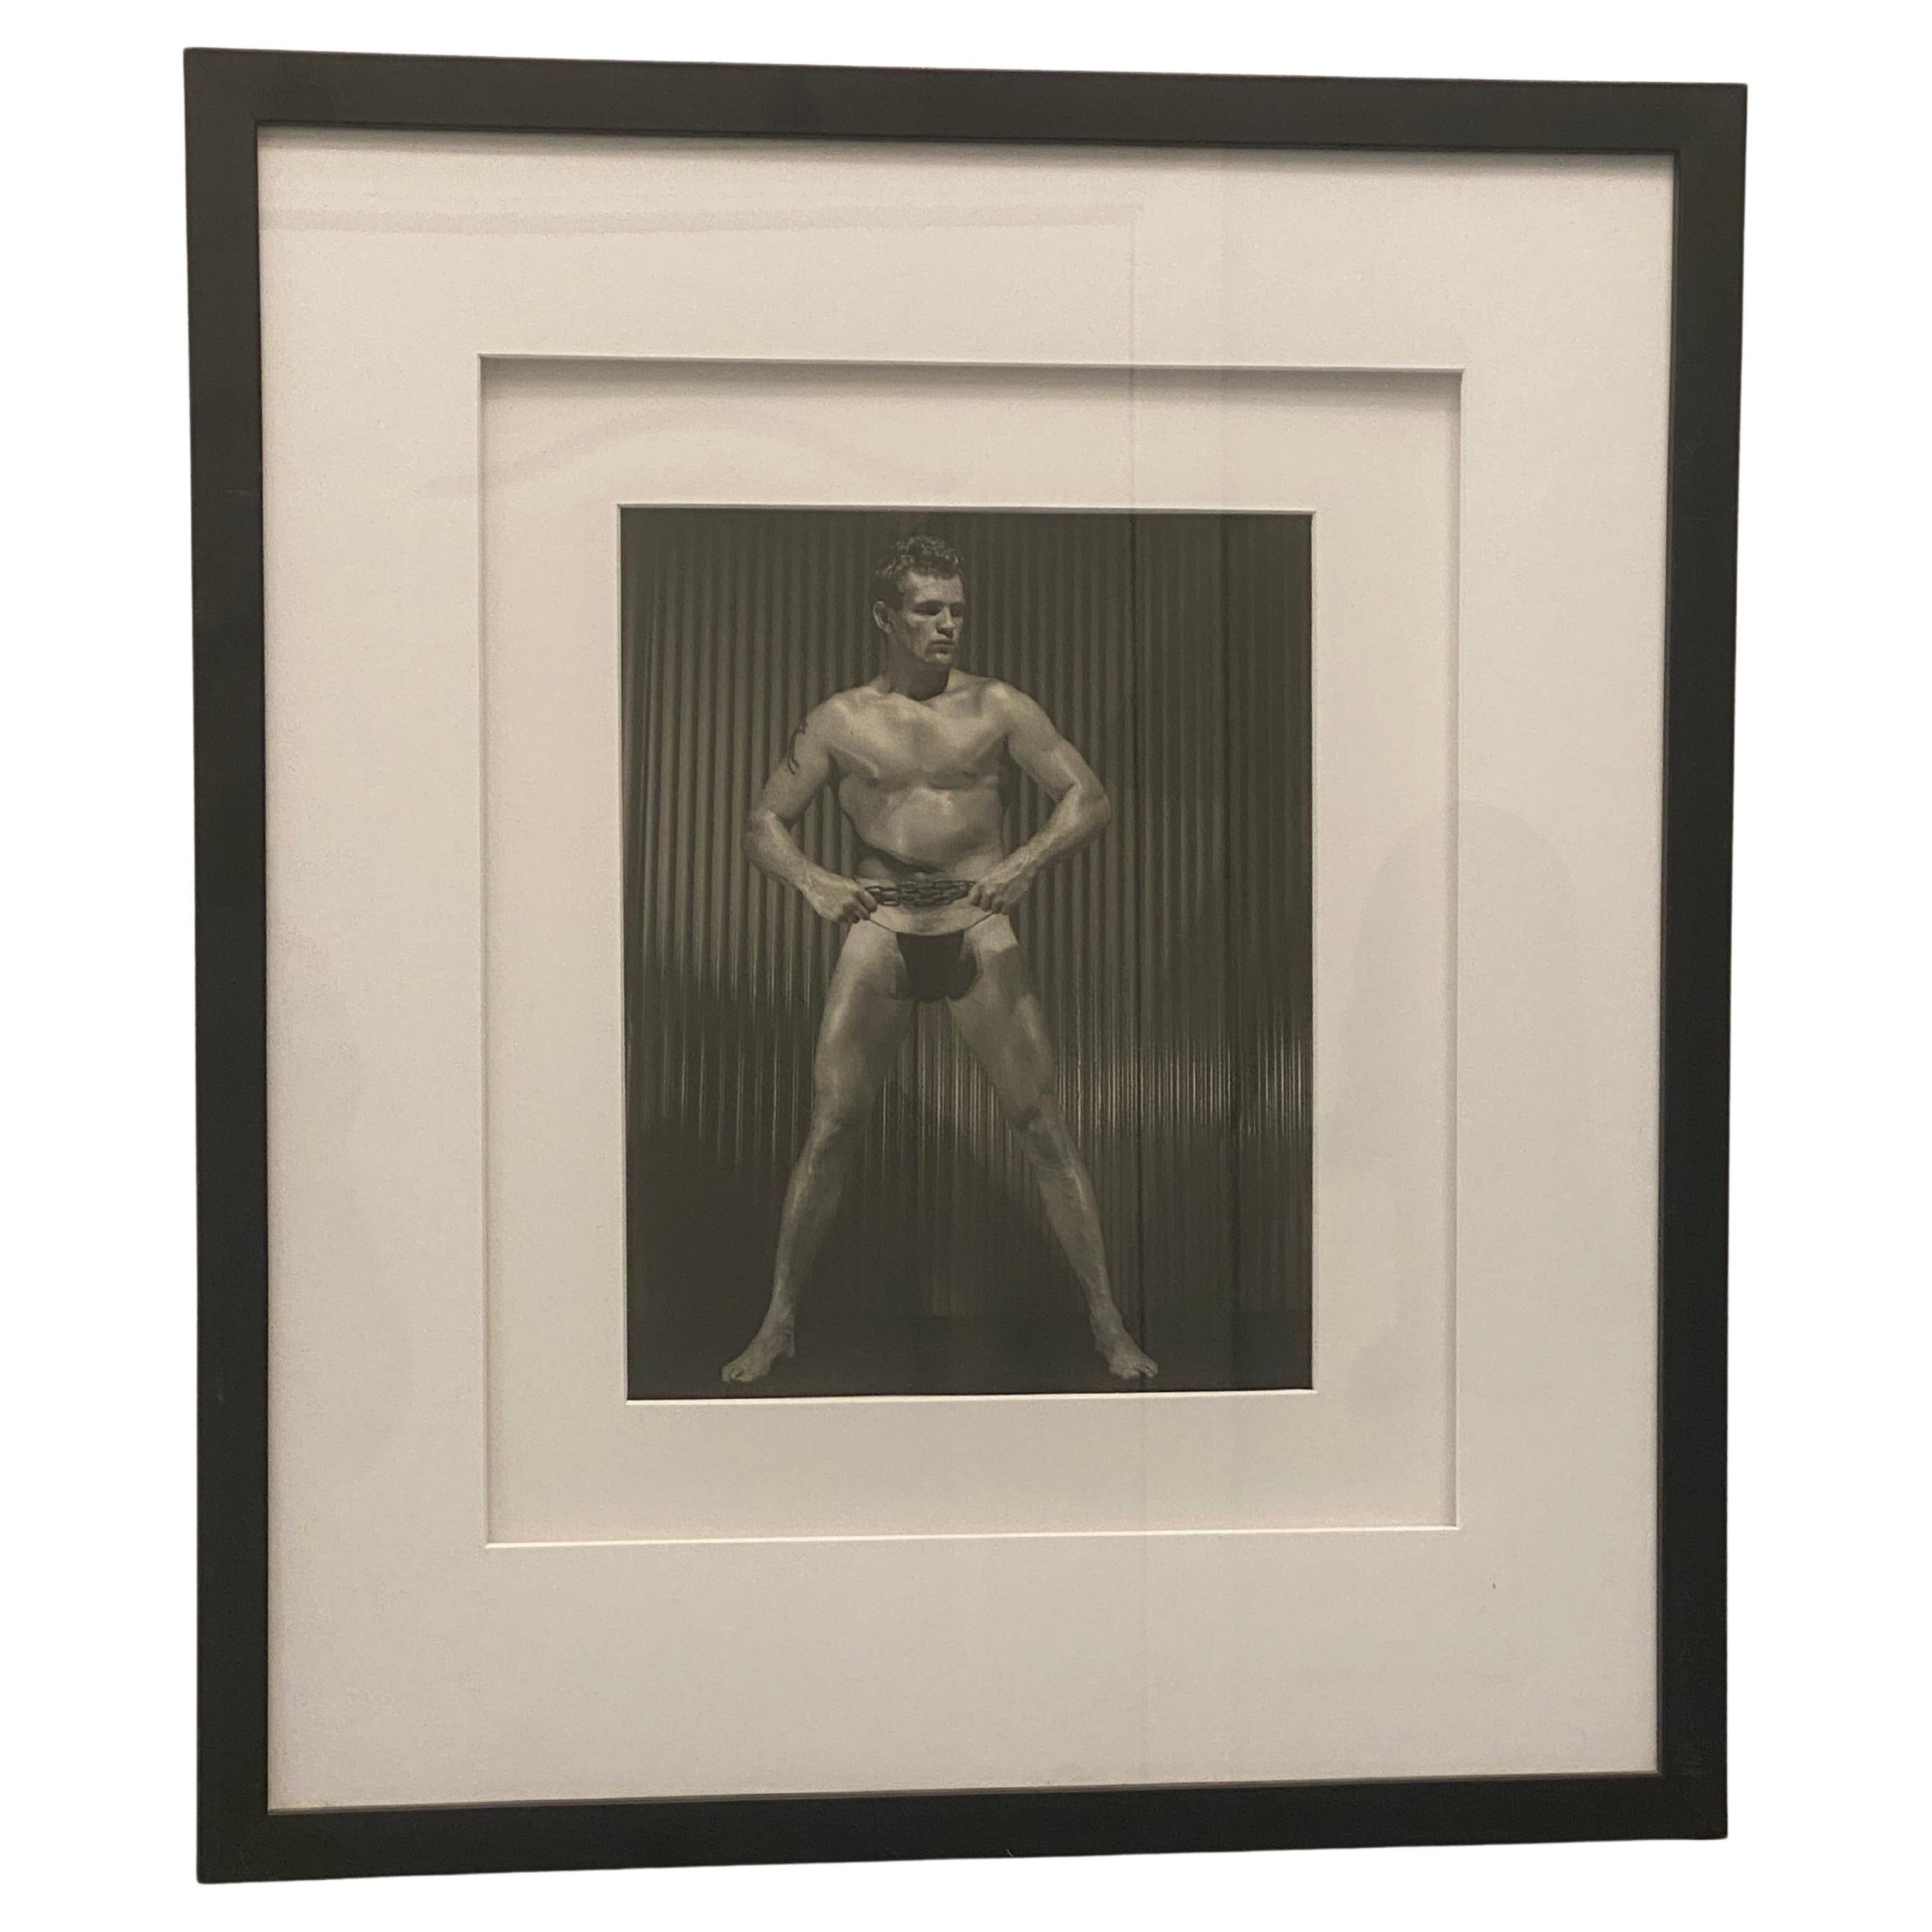 Photographie masculine nue originale de Bruce of L.A. (Bruce Bellas) des années 50